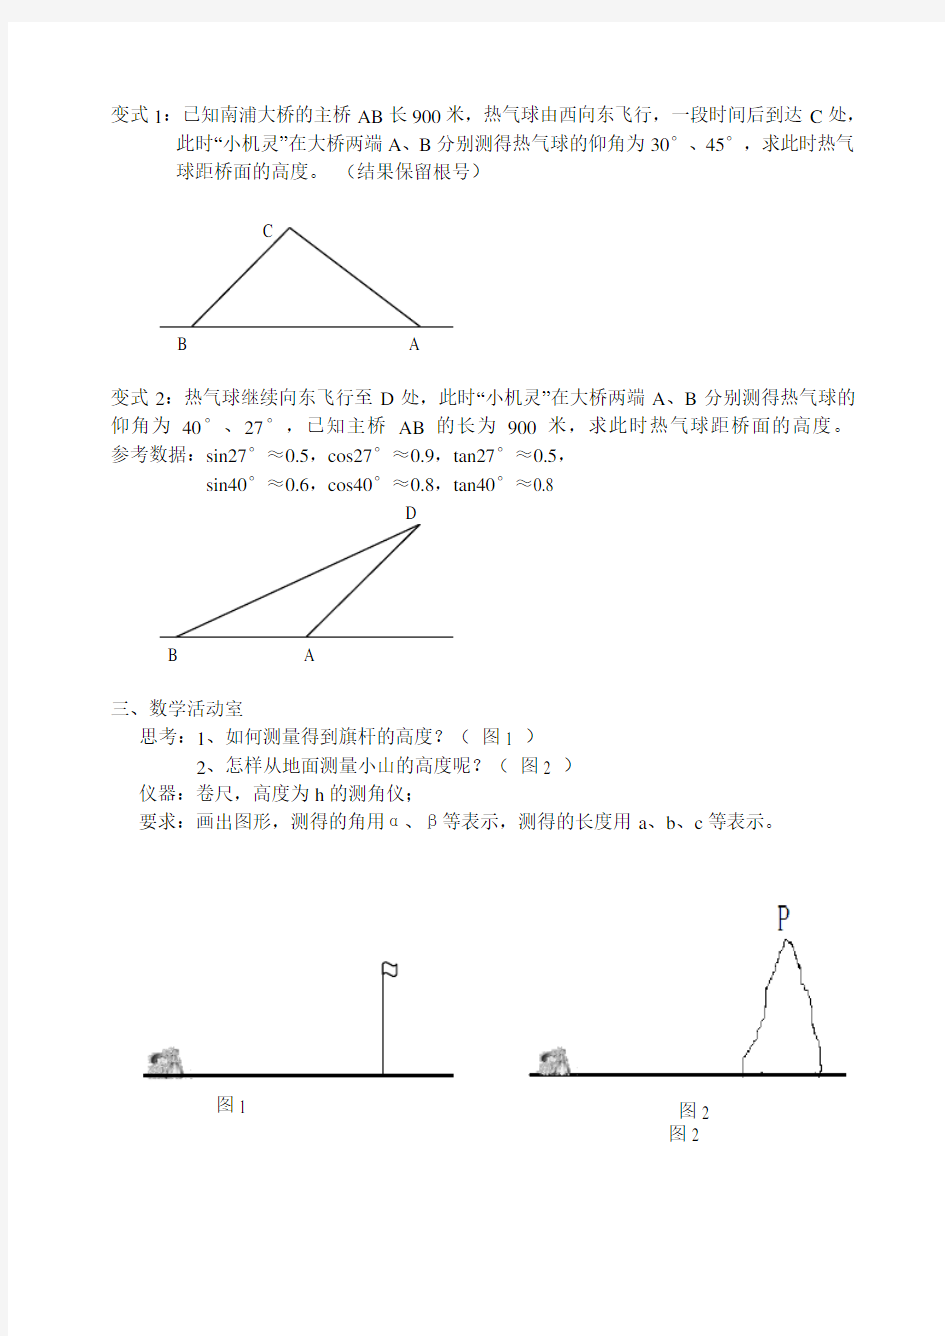 7.6用锐角三角函数解决问题(仰角、俯角问题)